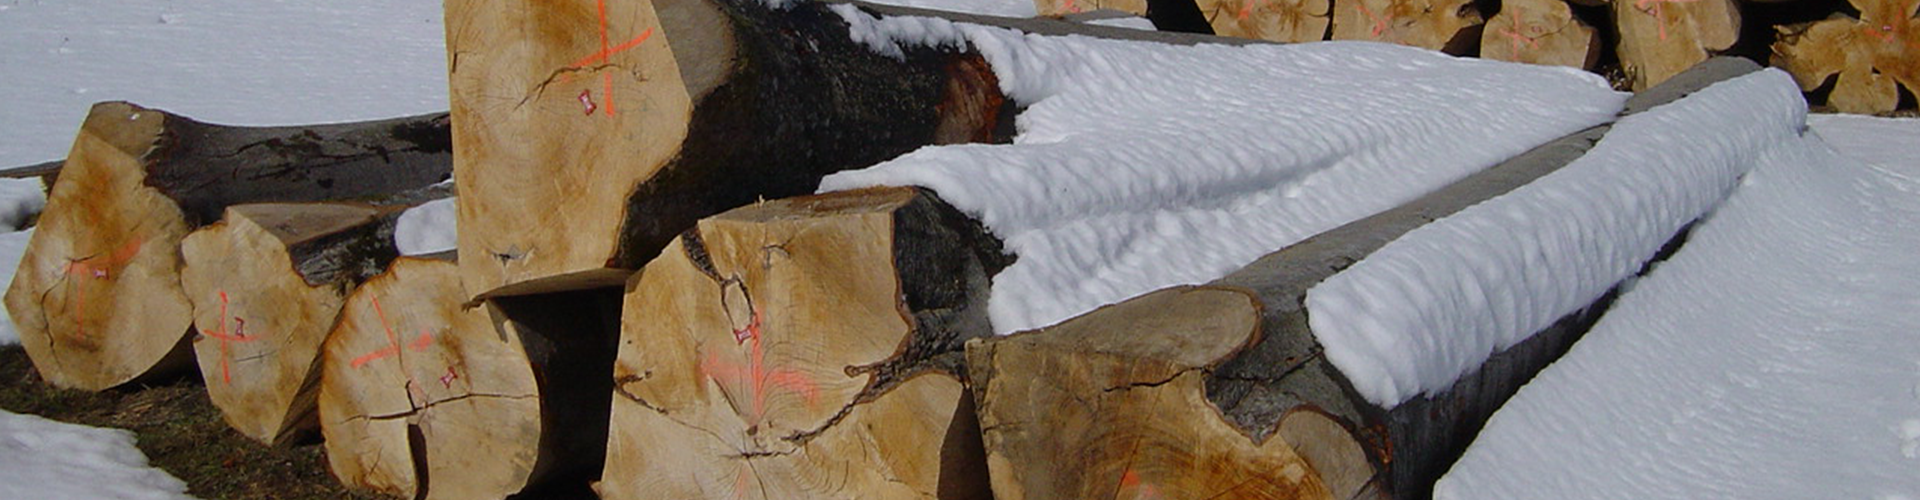 Une image d'un diaporama sur le commerce du bois de grue